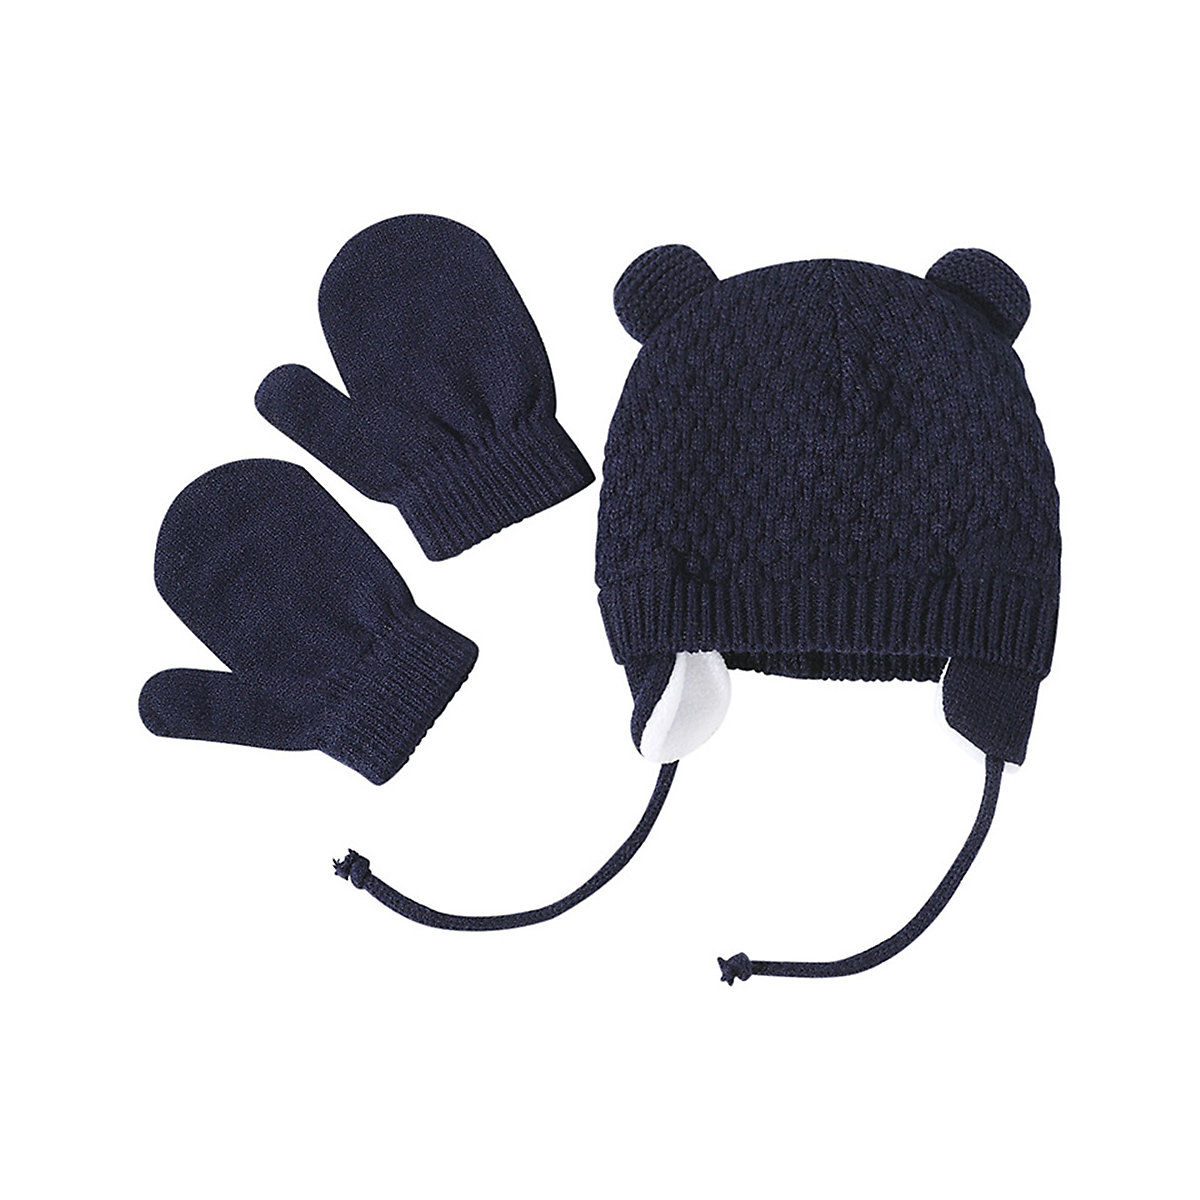 Vicabo Baby Mütze und Handschuhe Set Winter Strickmütze Mützen für Kinder dunkelblau